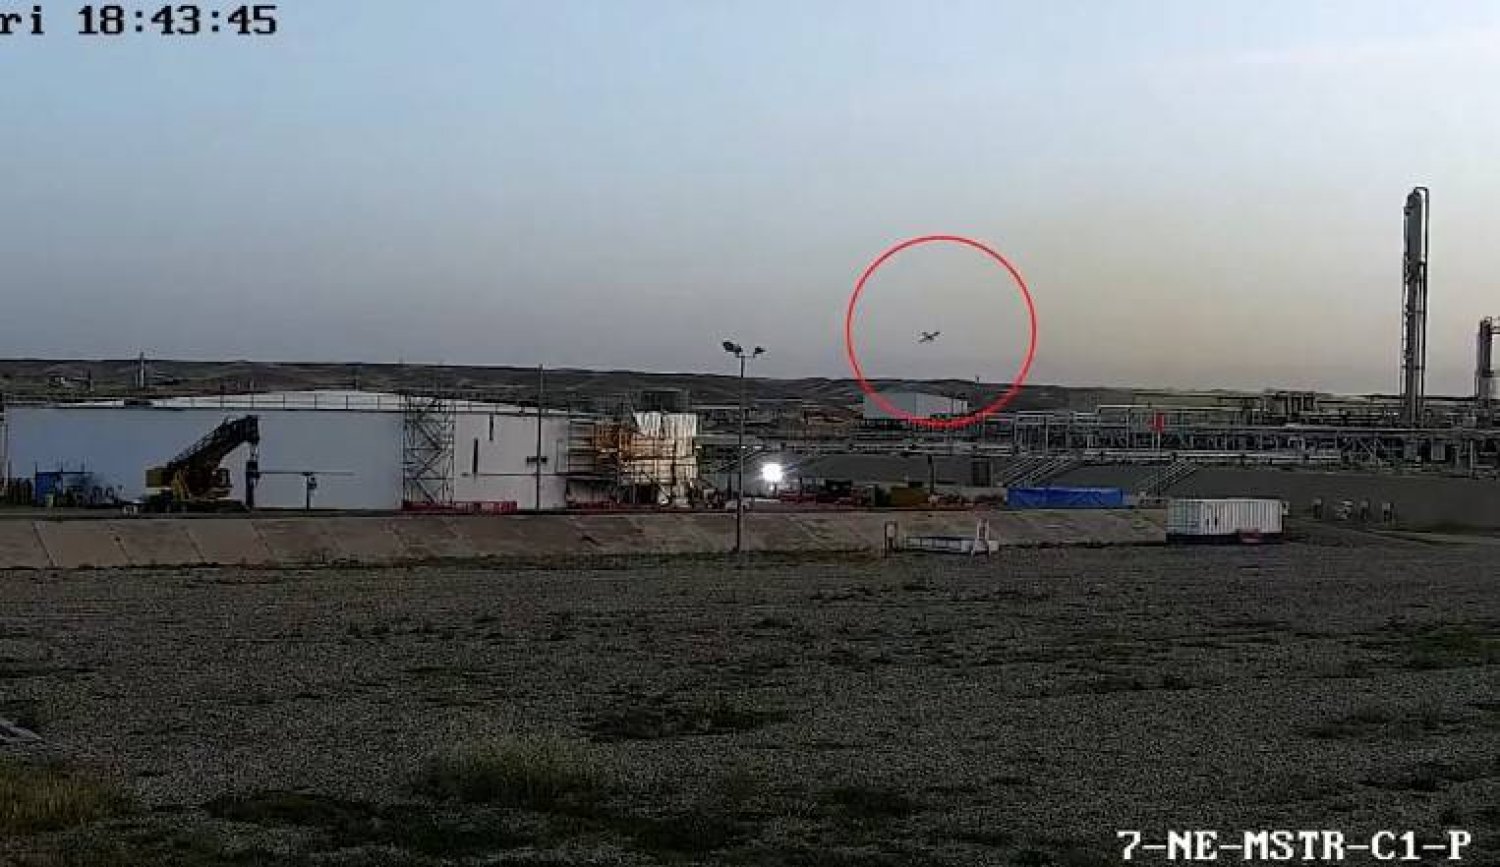 لقطة شاشة من كاميرا مراقبة وزعتها وسائل إعلام كردية تظهر اقتراب المسيّرة المفخخة من حقل «كورمور» الغازي شمال العراق.